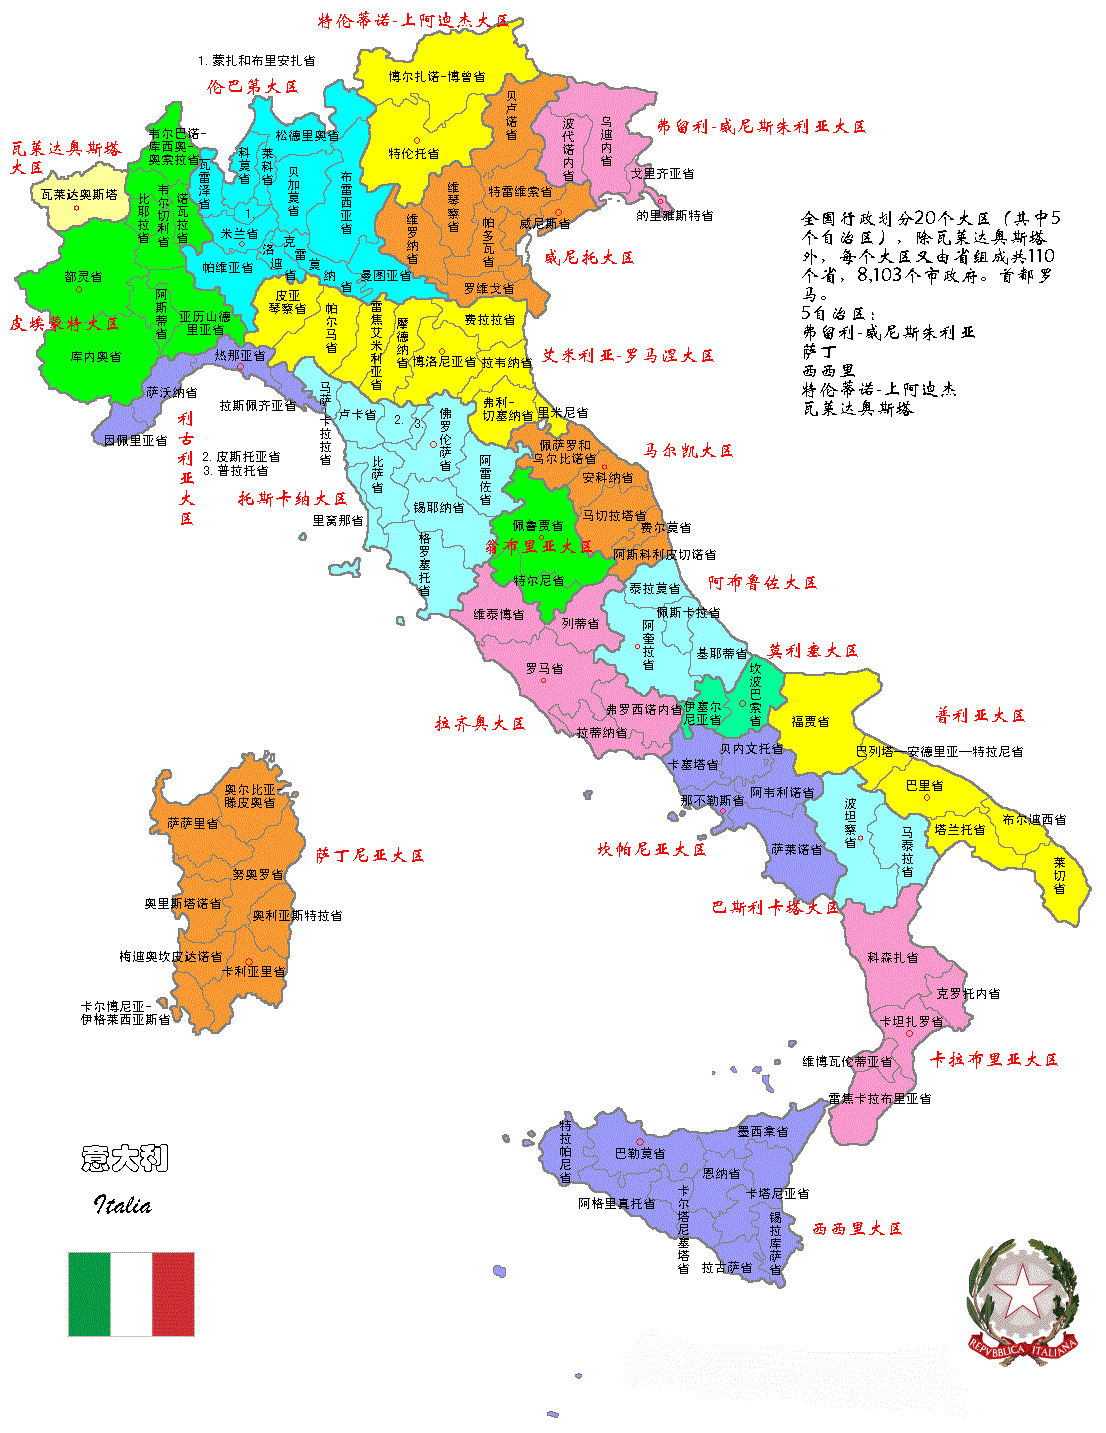 意大利行政地图下载-意大利行政区划图下载 高清中文